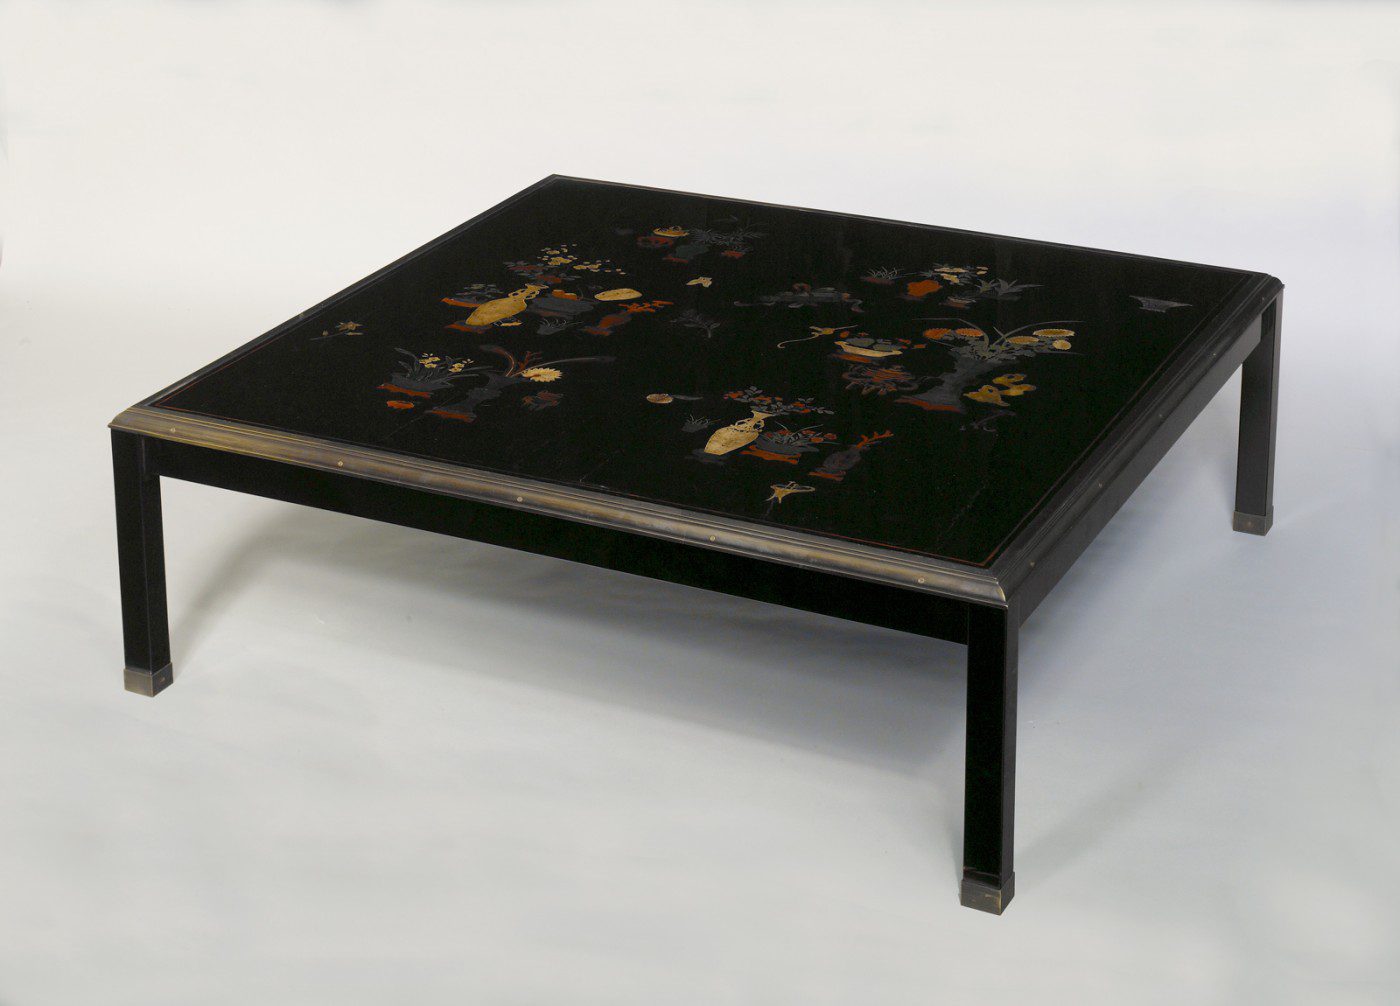 Table basse de Louis Cane composée de panneaux en laque polychrome